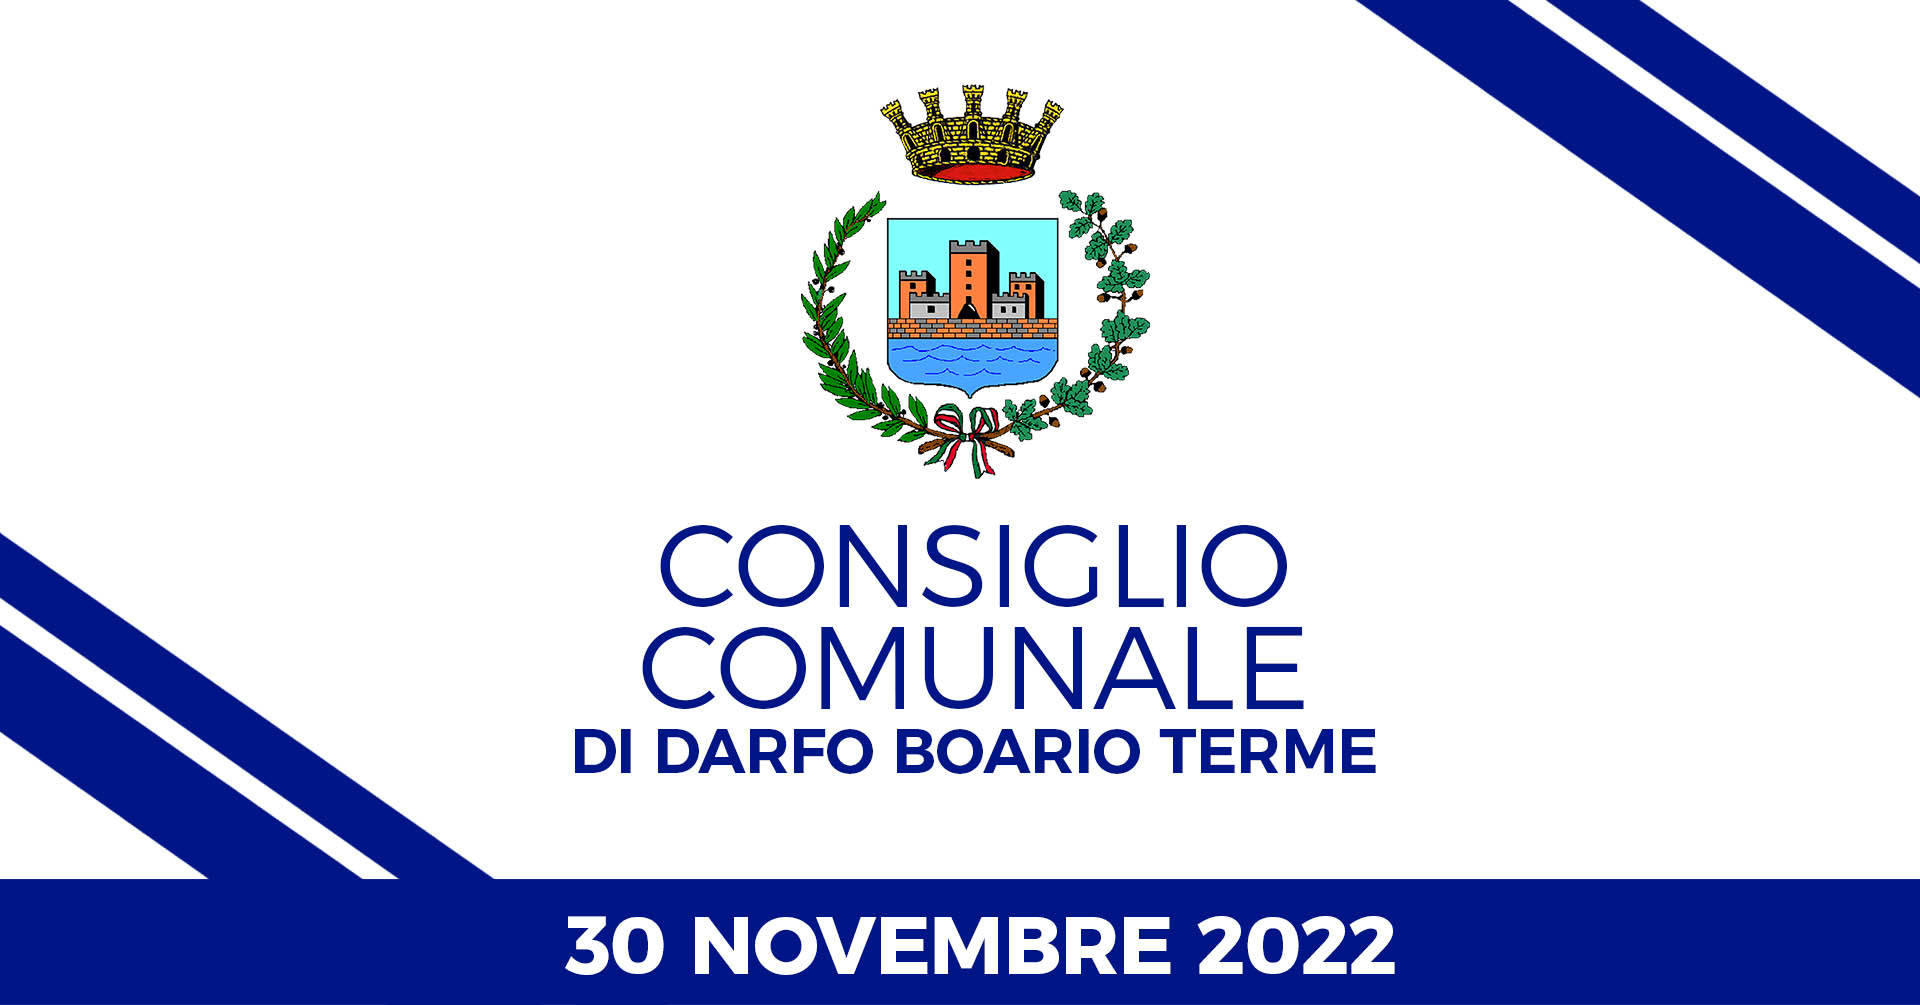 Consiglio Comunale di Darfo Boario Terme del 30 novembre 2022